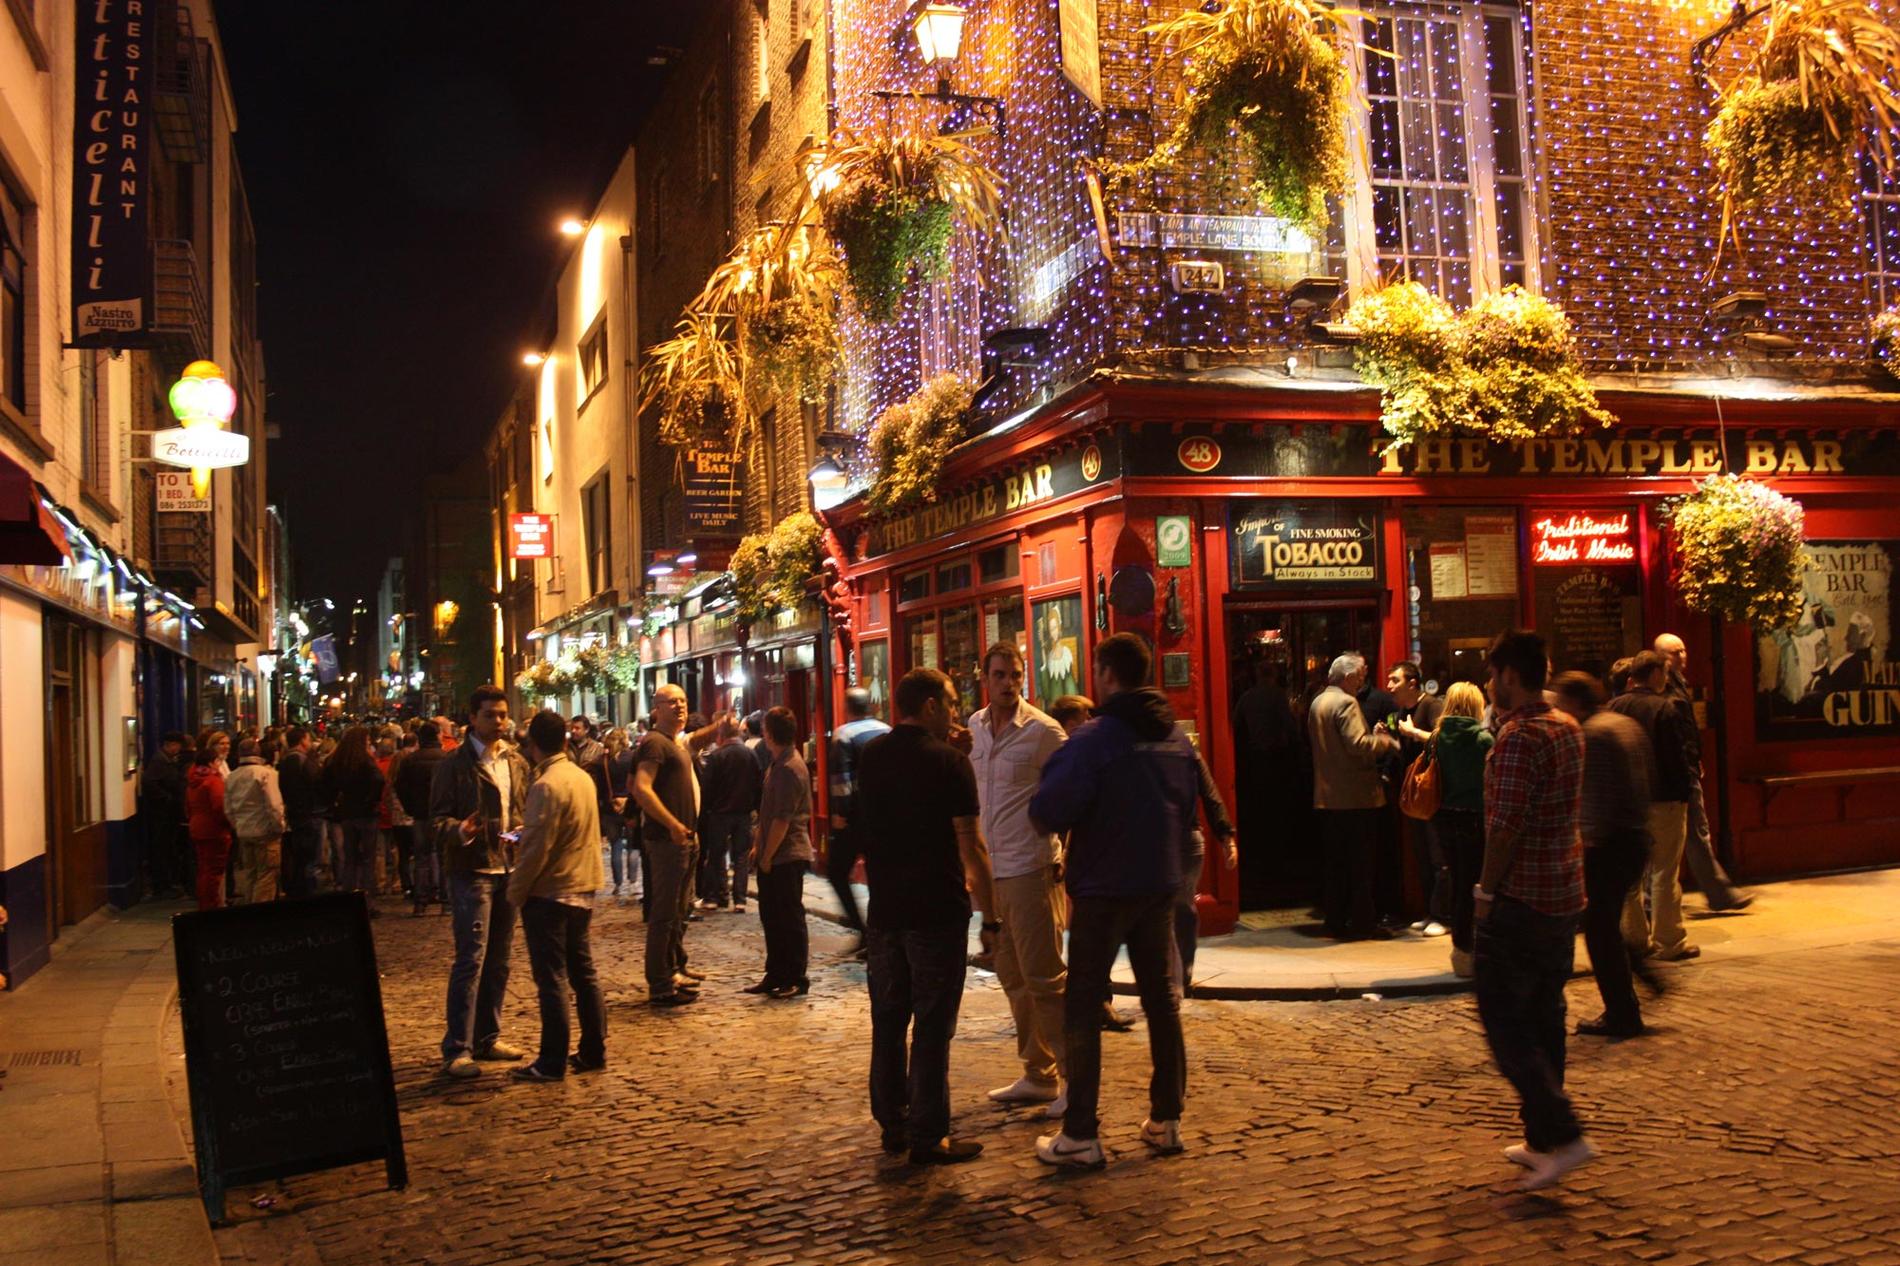 Temple Bar lockar törstiga turister och ”locals” i Dublin.